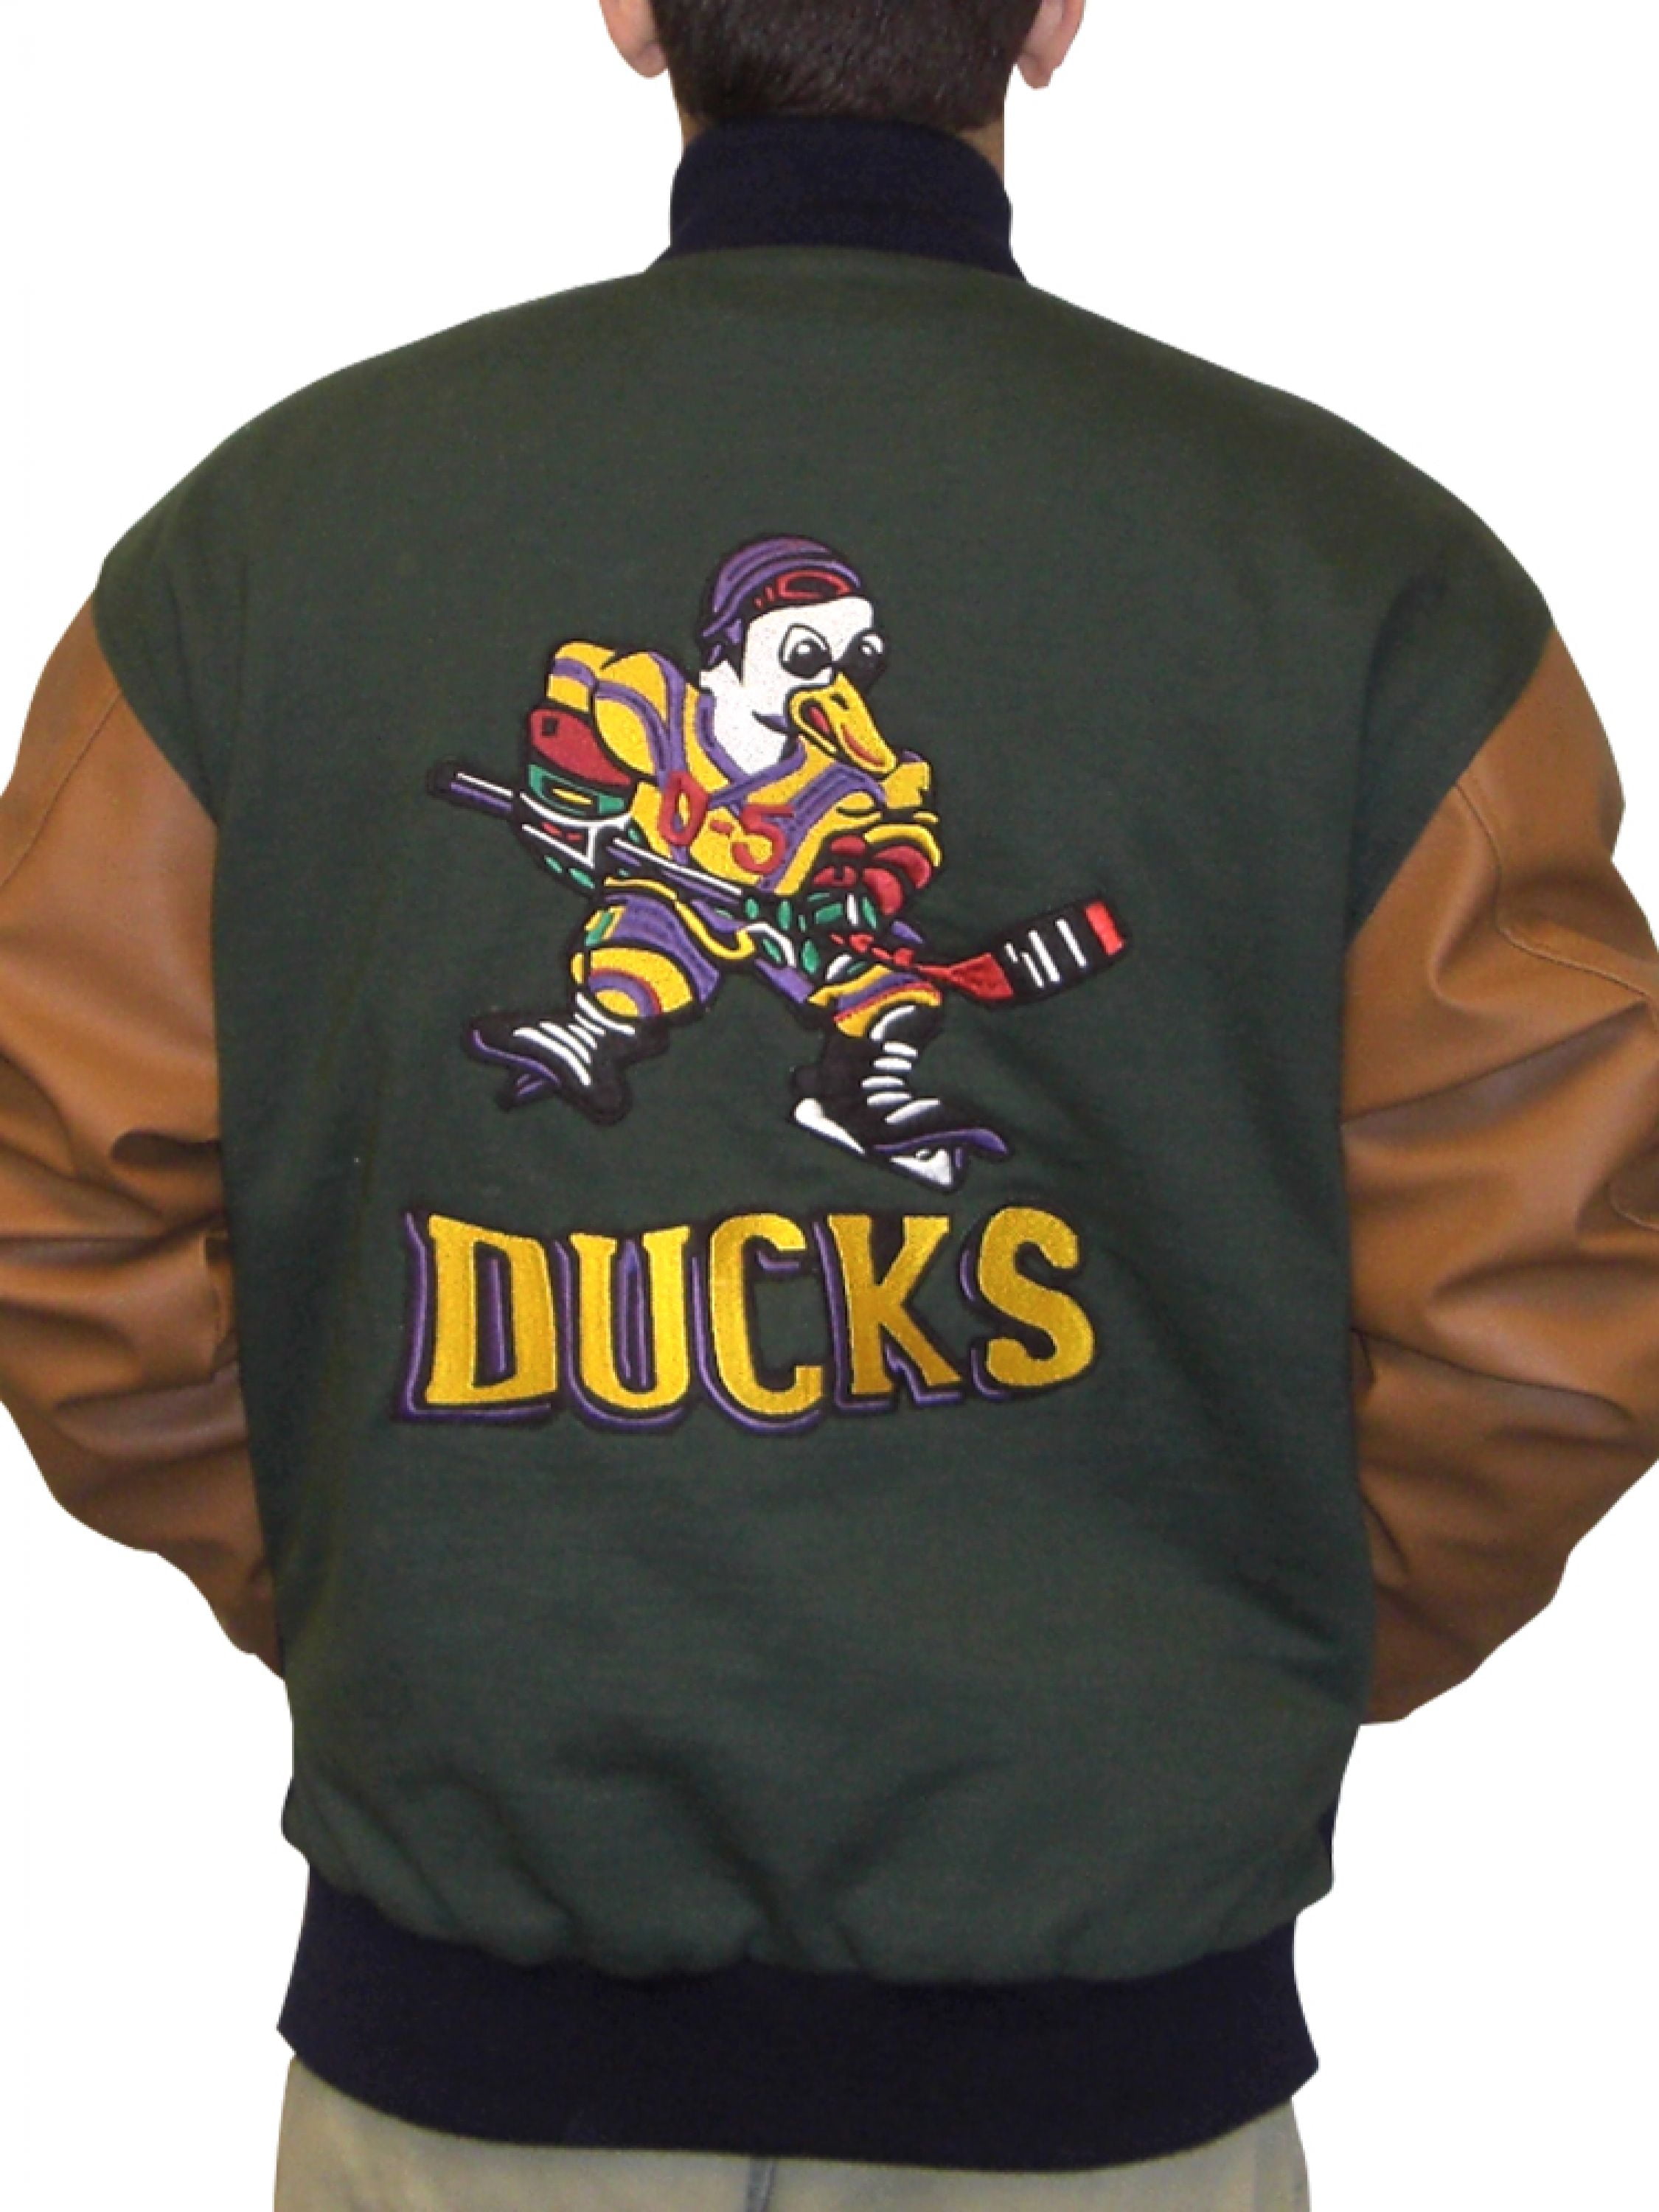 Gordon Bombay Team USA Jacket D2 Mighty Ducks Movie Varsity Hockey